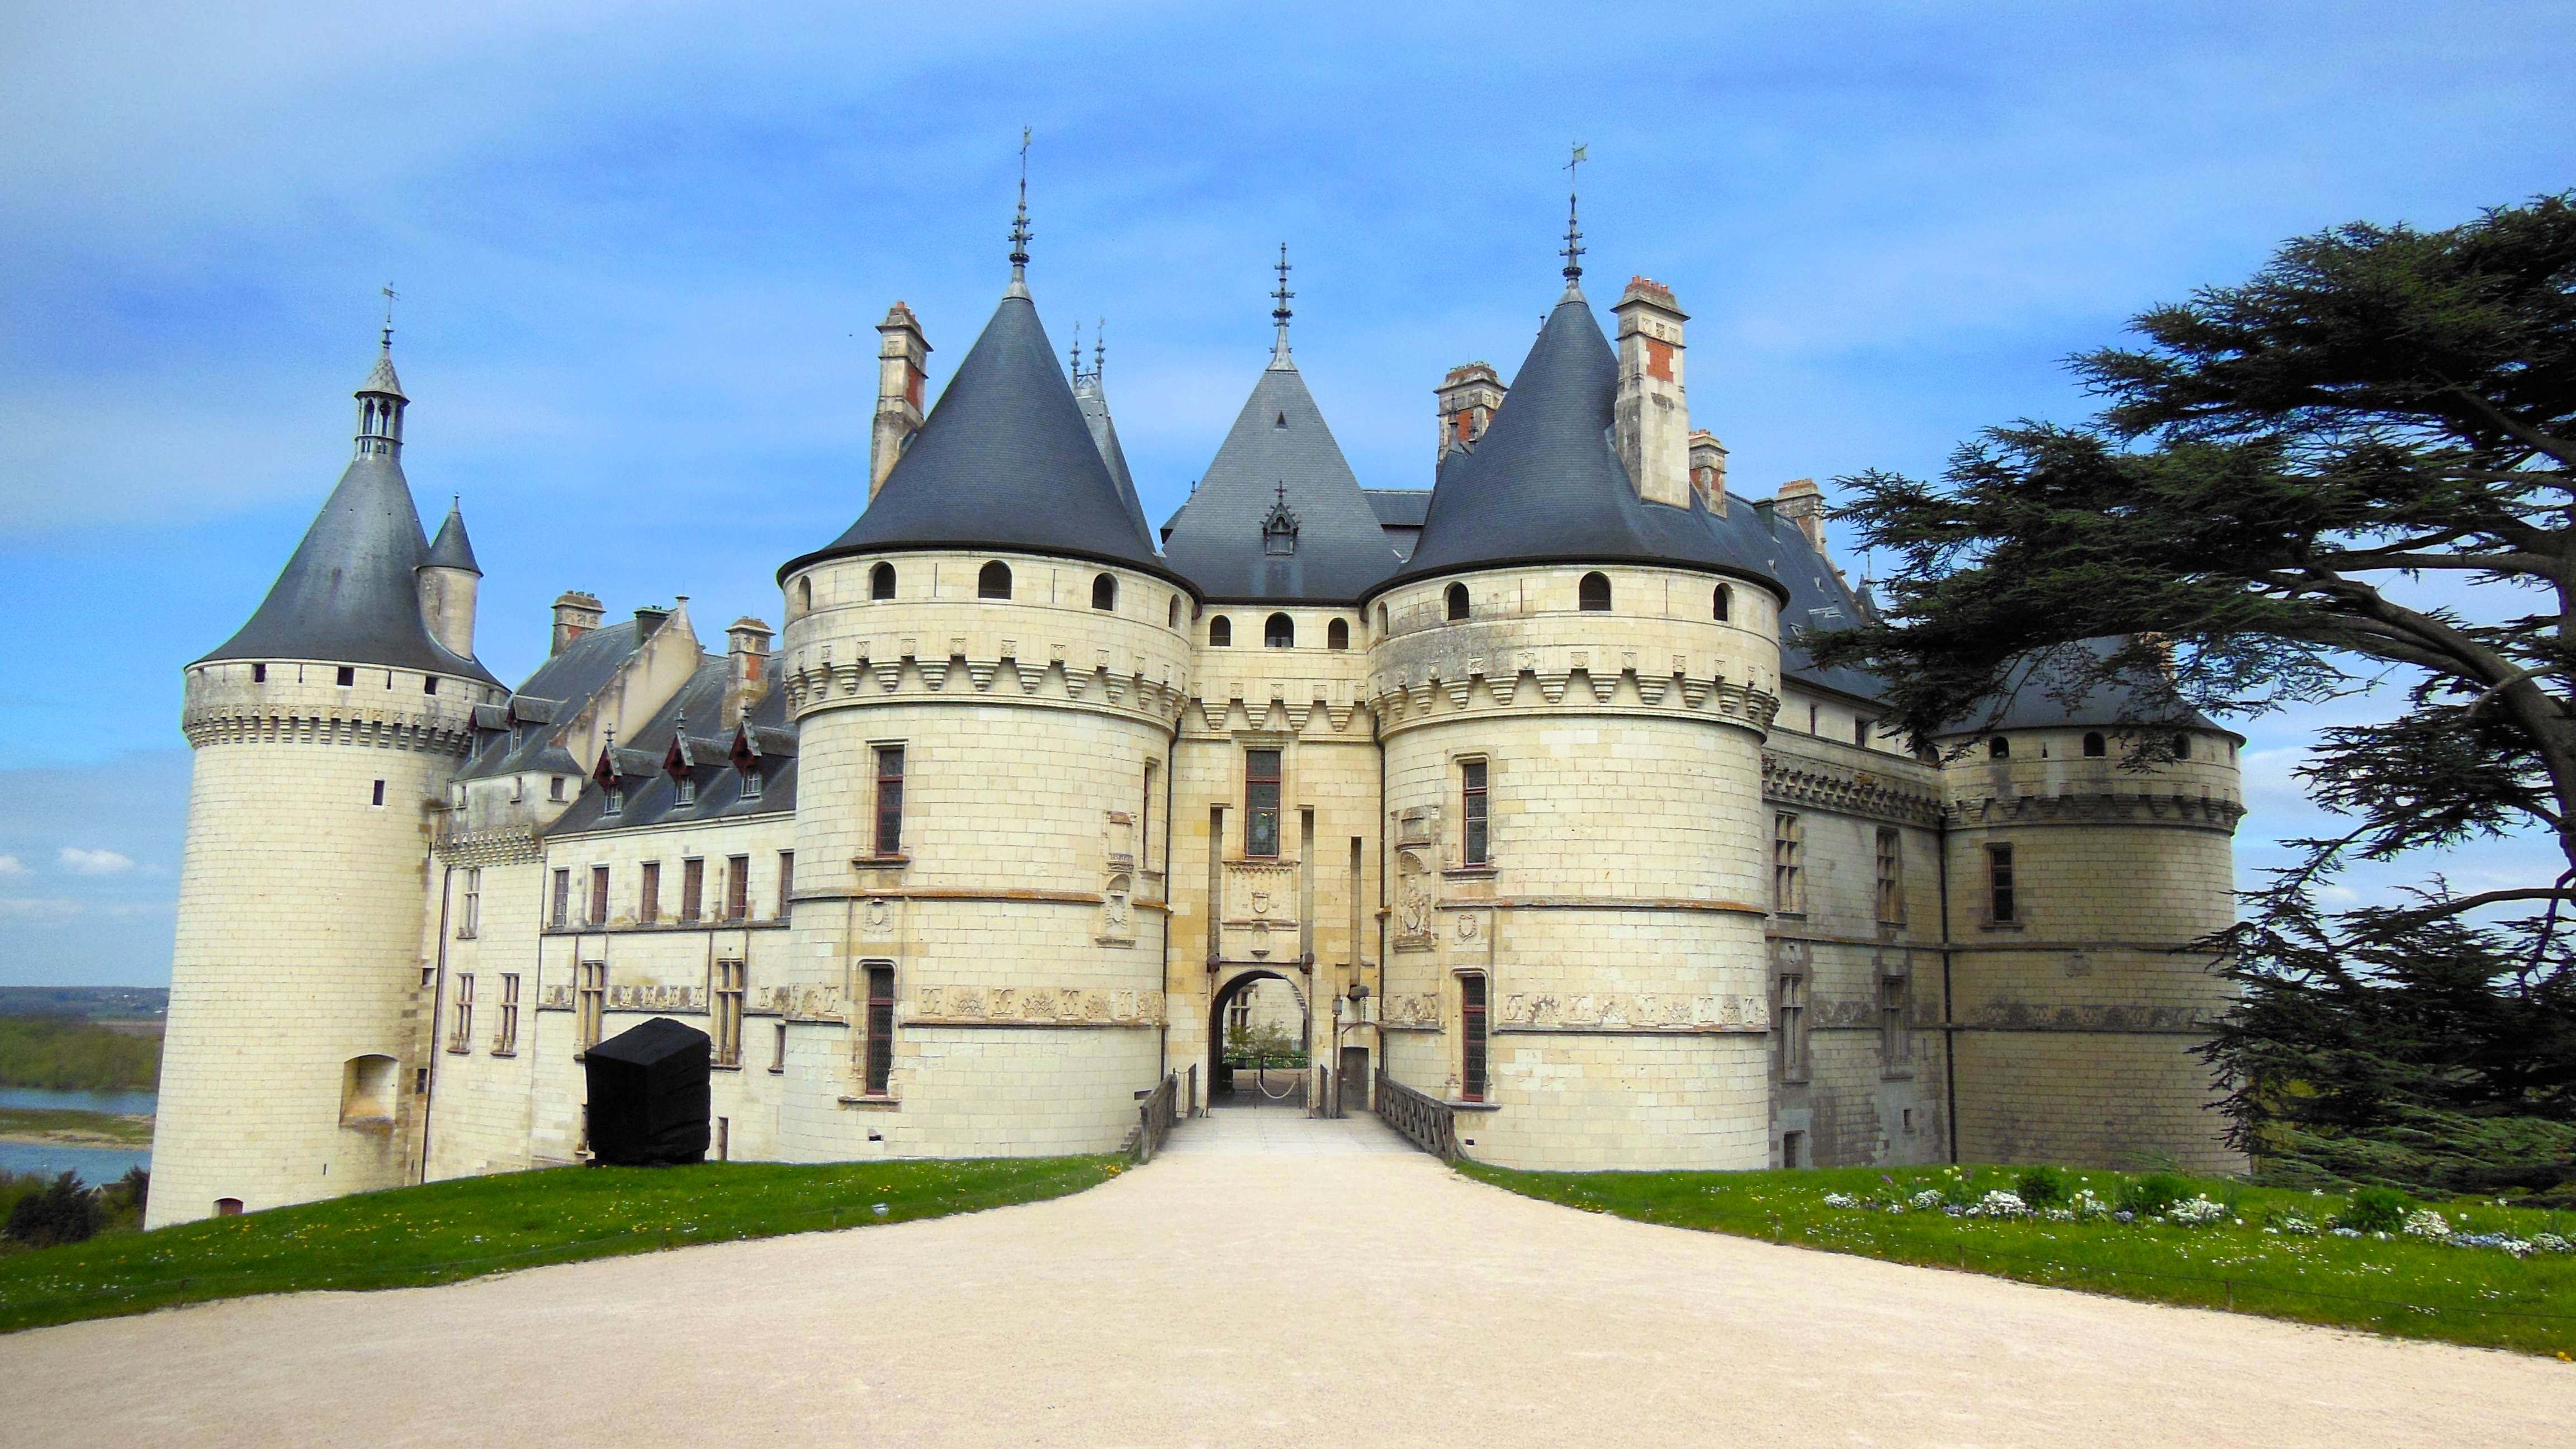 1253-chateau-chaumont-sur-loire-loir-et-cher.jpg